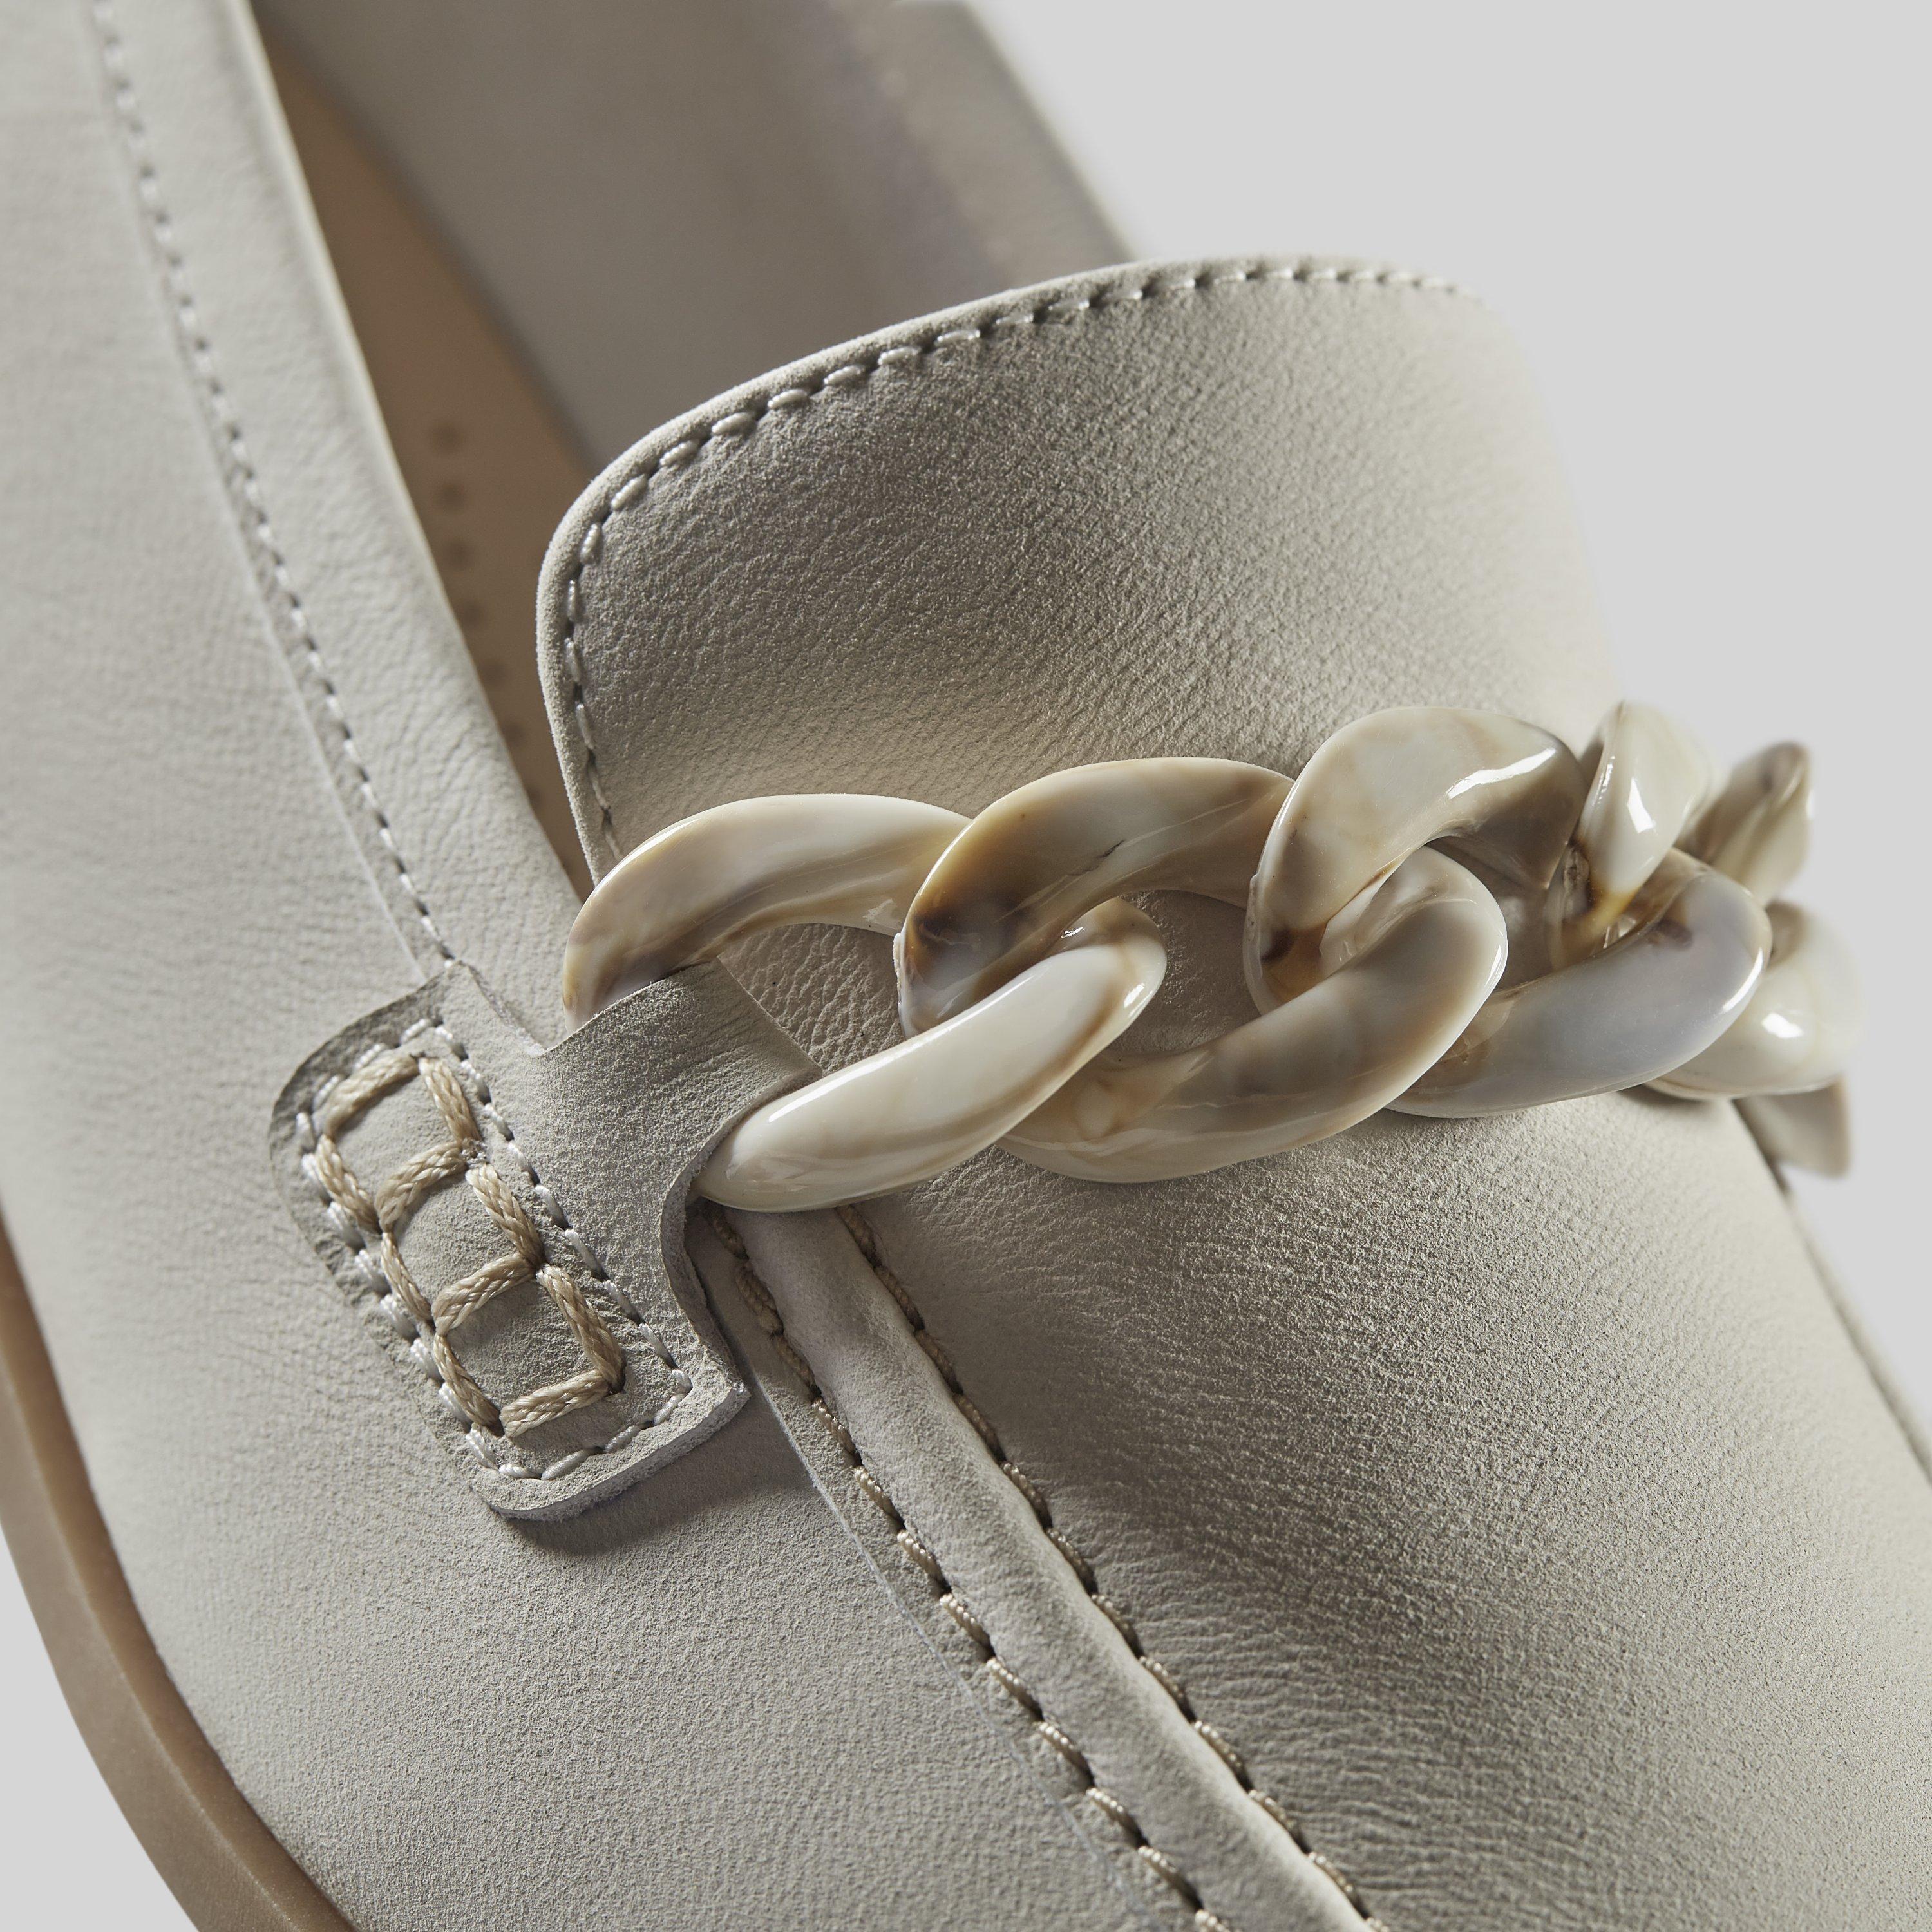 ZAPATO ANCHO ESPECIAL UN LOOP CLARKS - Calzados Sierra, Tienda Online de  Zapatos de Mujer y Hombre con las mejores marcas